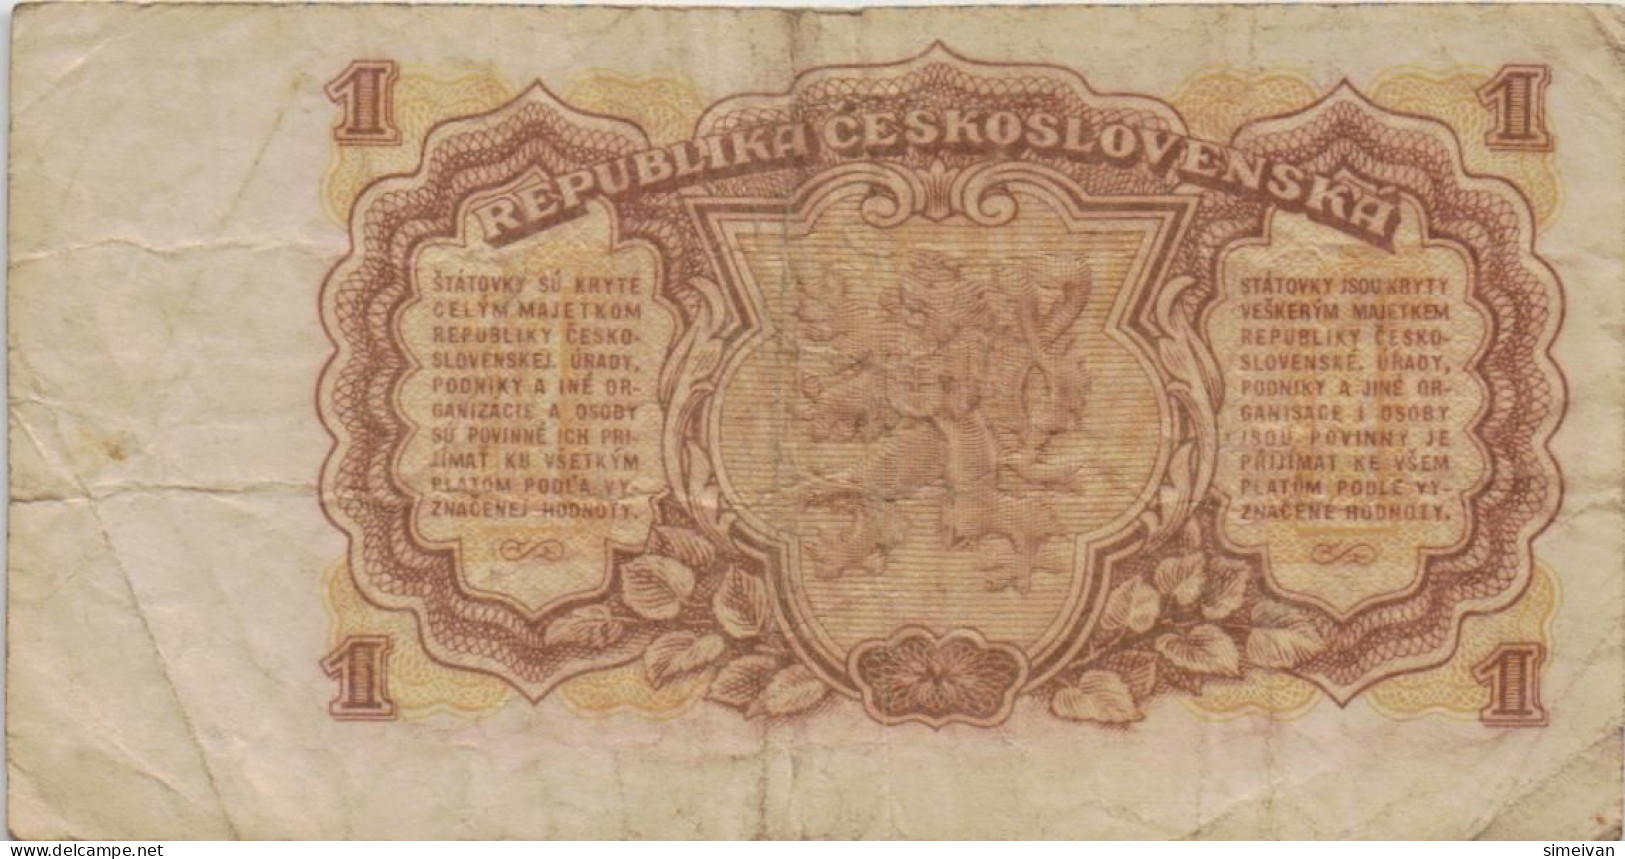 Czechoslovakia 1 Koruna 1953 P-78b Banknote Europe Currency Tchécoslovaquie Tschechoslowakei #5231 - Czechoslovakia